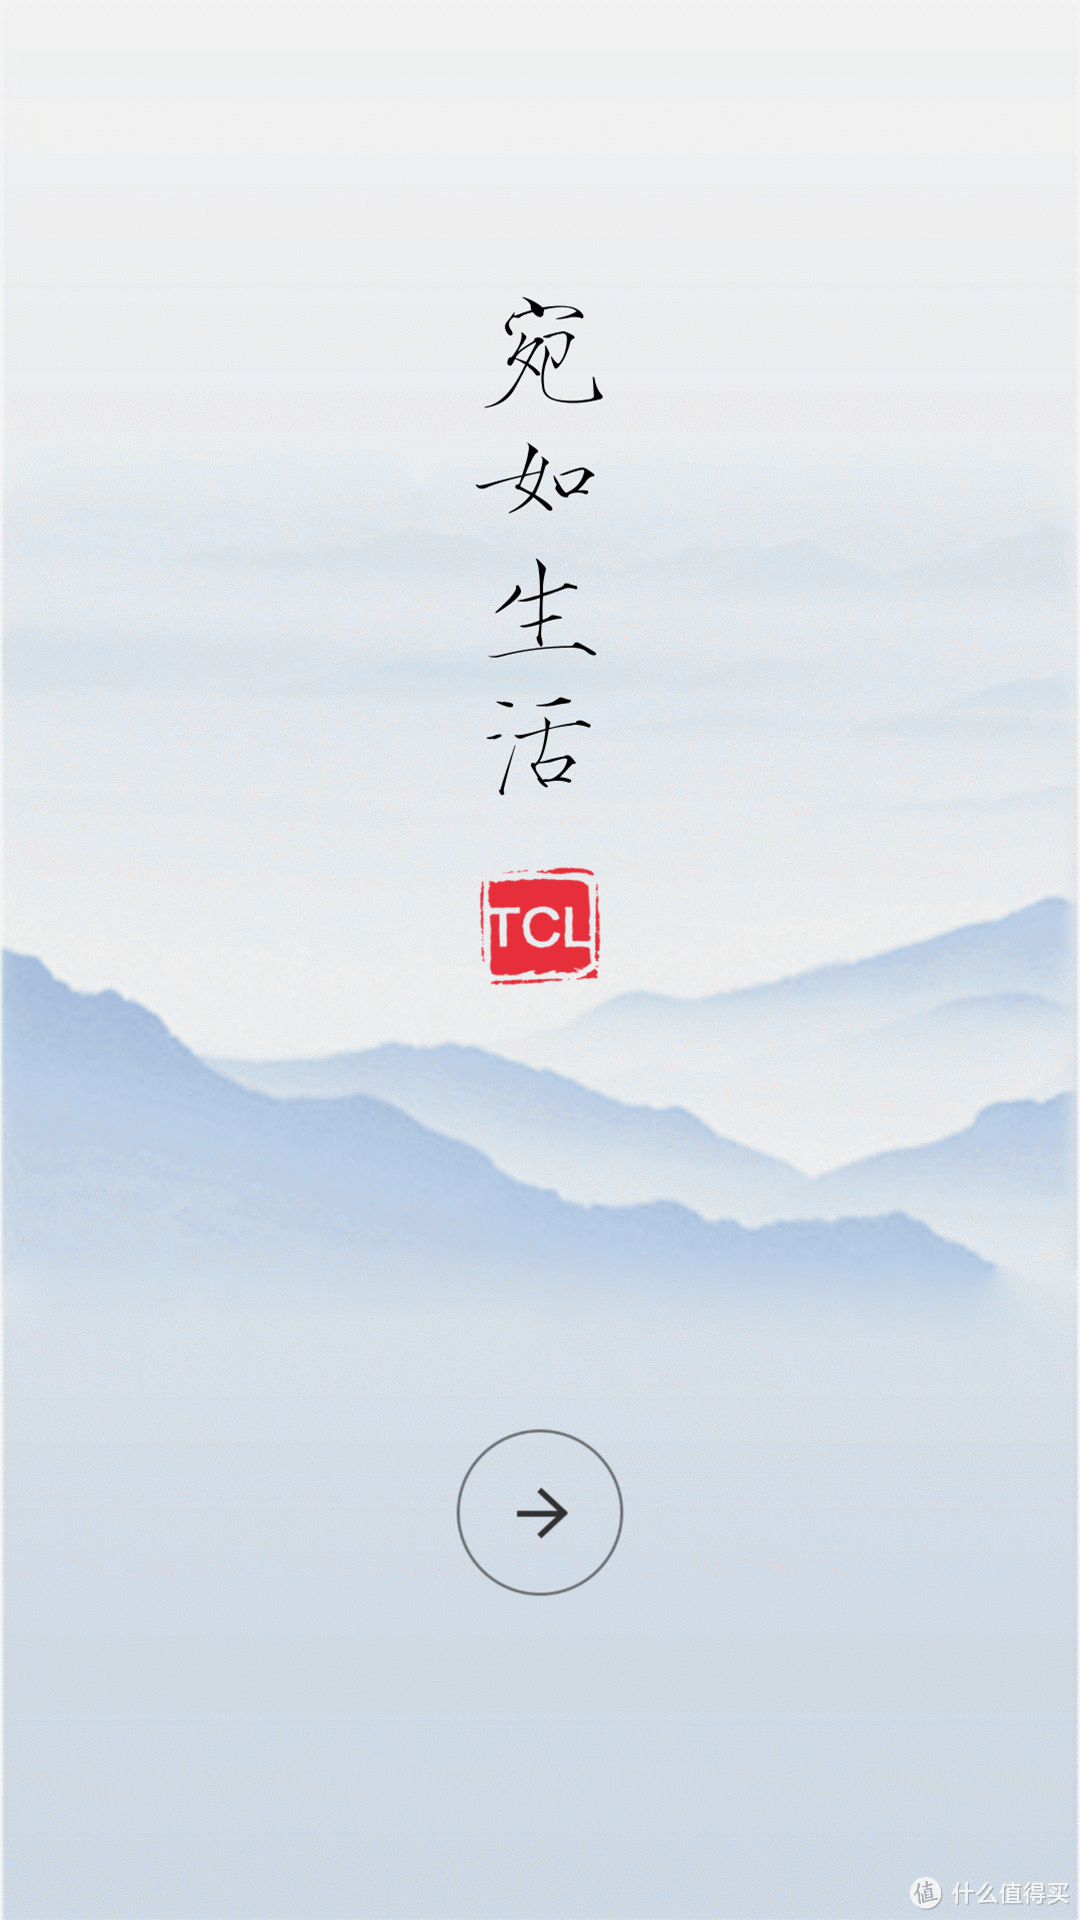 清新文艺风 TCL 750 手机众测体验